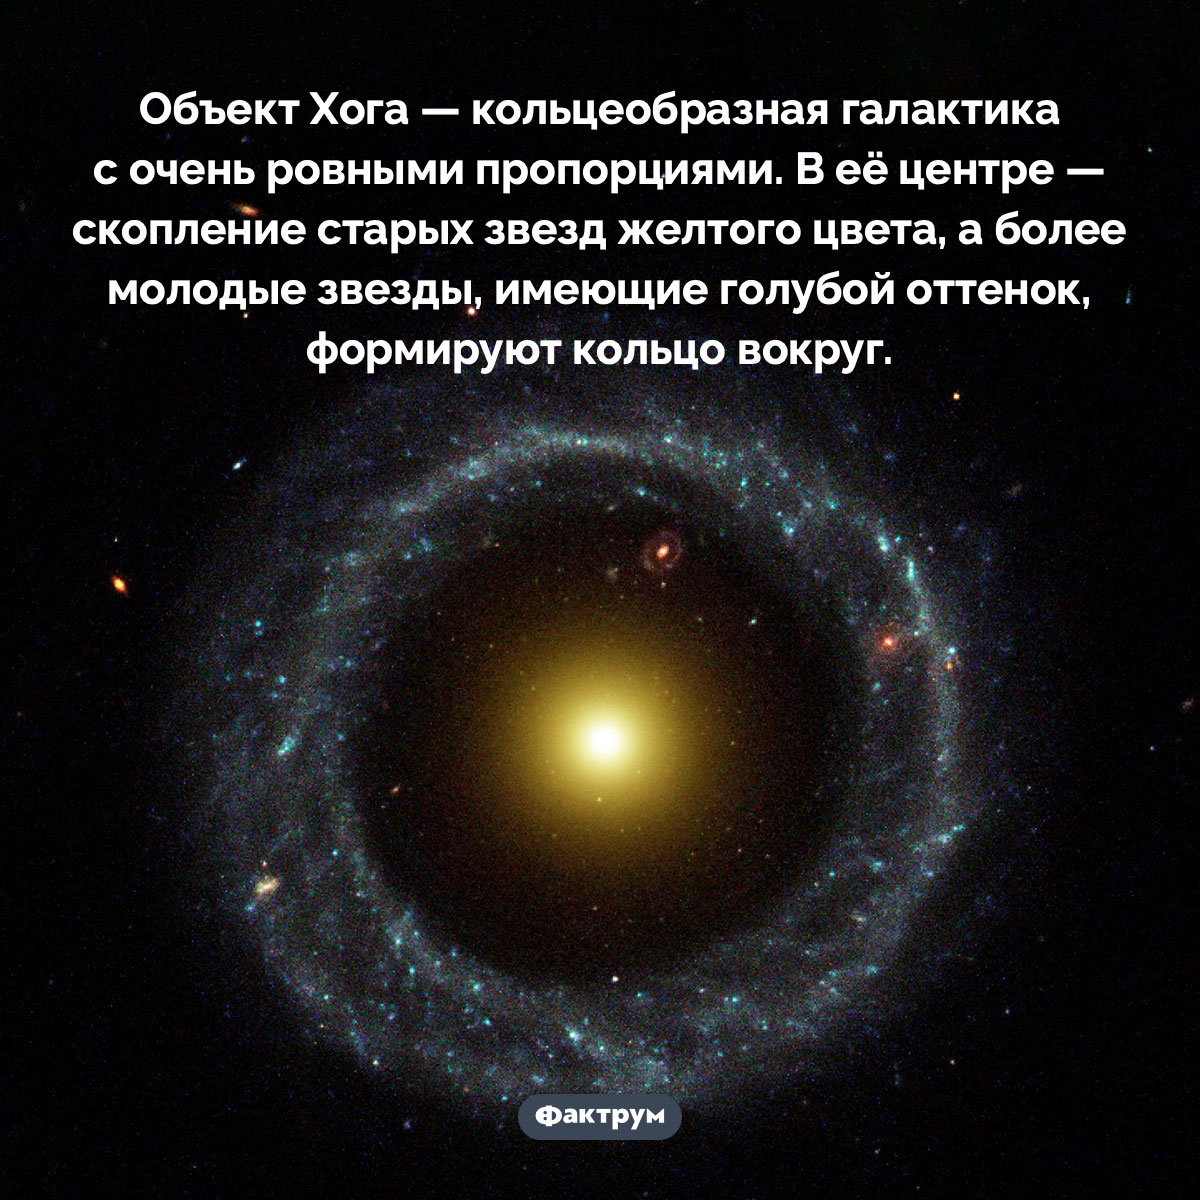 Что такое объект Хога. Объект Хога — кольцеобразная галактика с очень ровными пропорциями. В её центре — скопление старых звезд желтого цвета, а более молодые звезды, имеющие голубой оттенок, формируют кольцо вокруг.